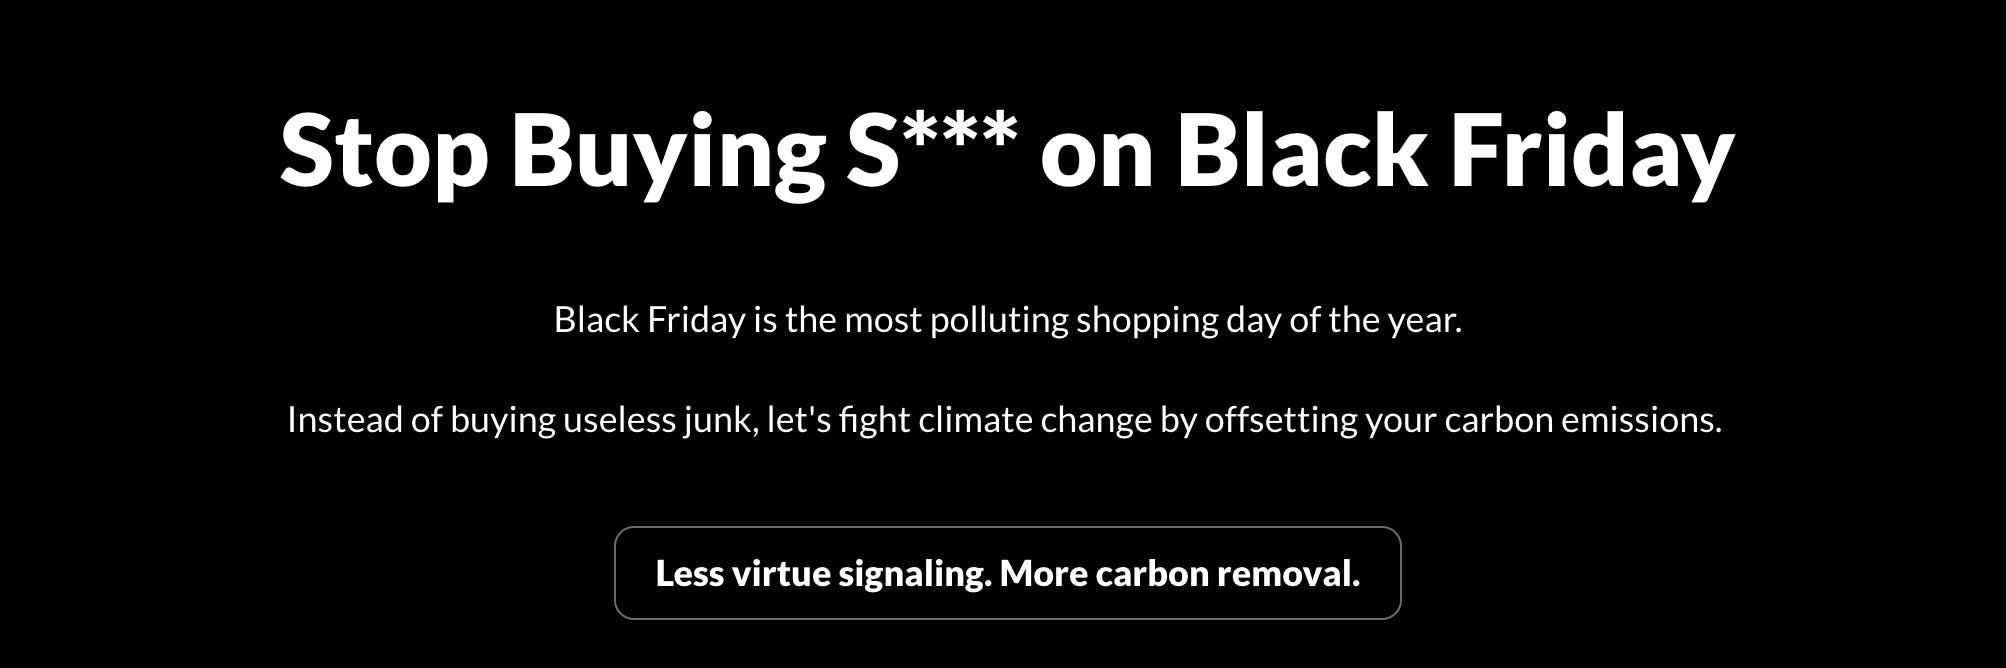 Carbon Offsets on Black Friday media 2